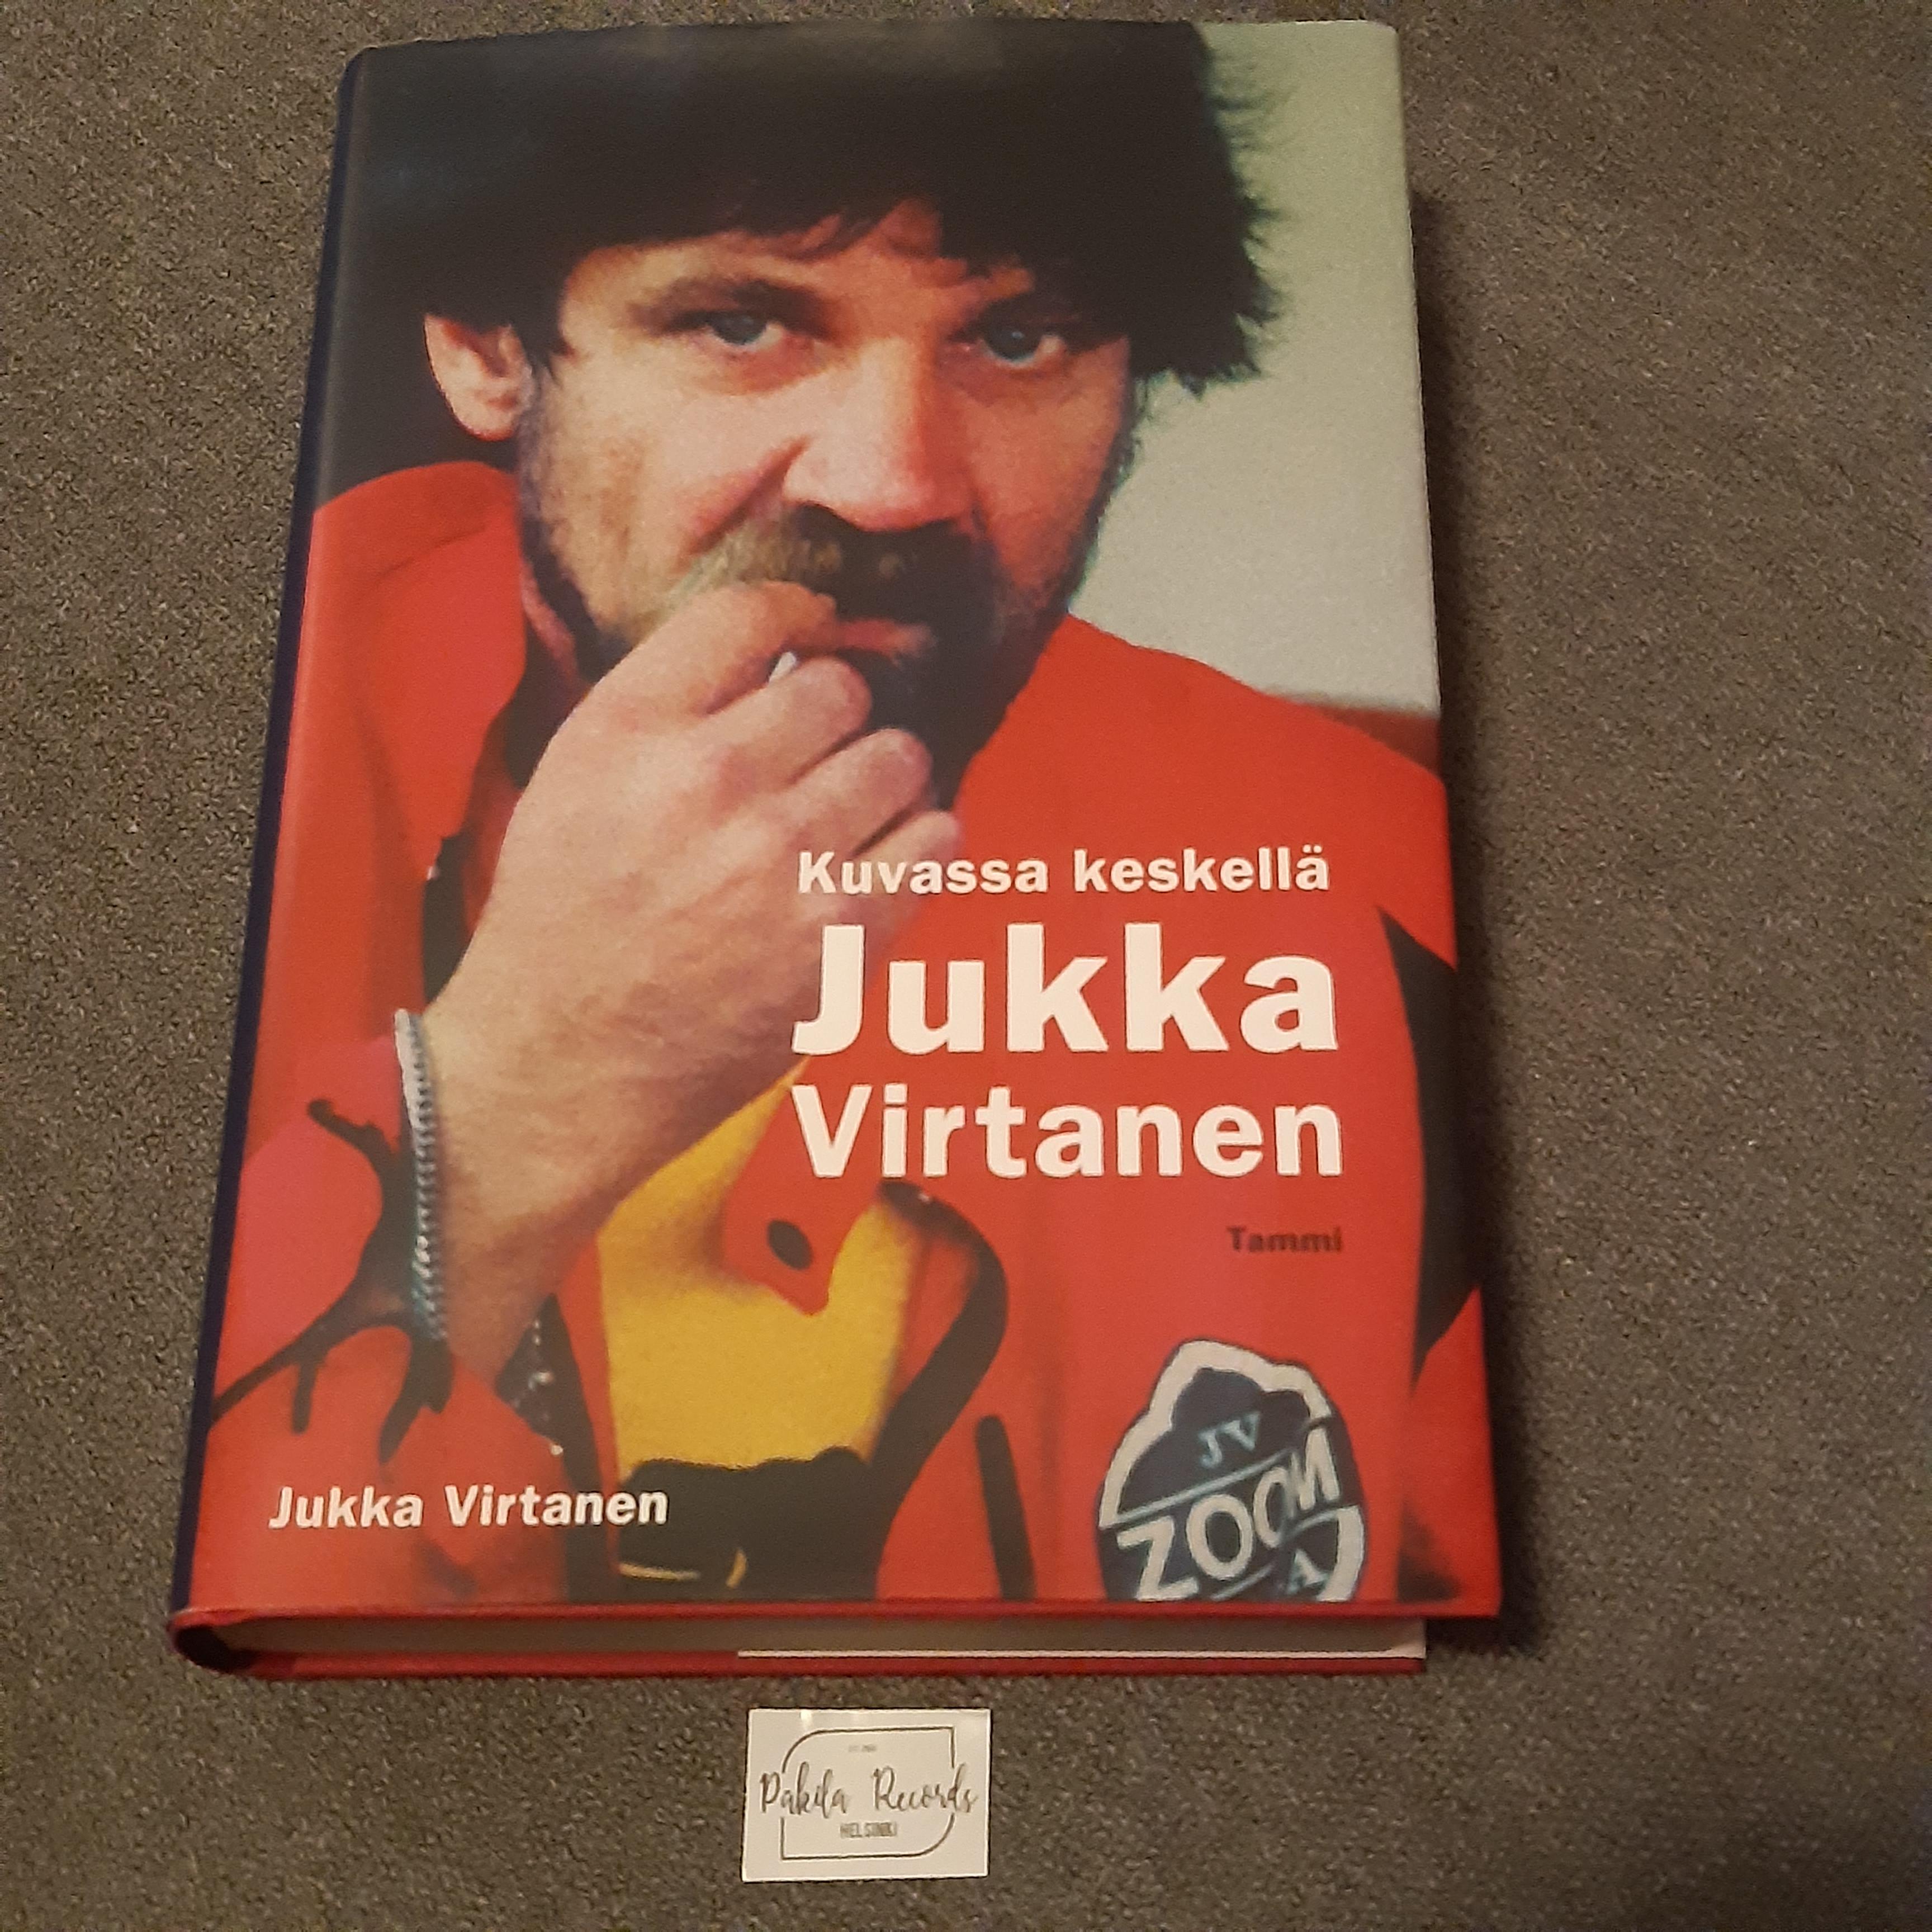 Kuvassa keskellä Jukka Virtanen - Jukka Virtanen - Kirja (käytetty)